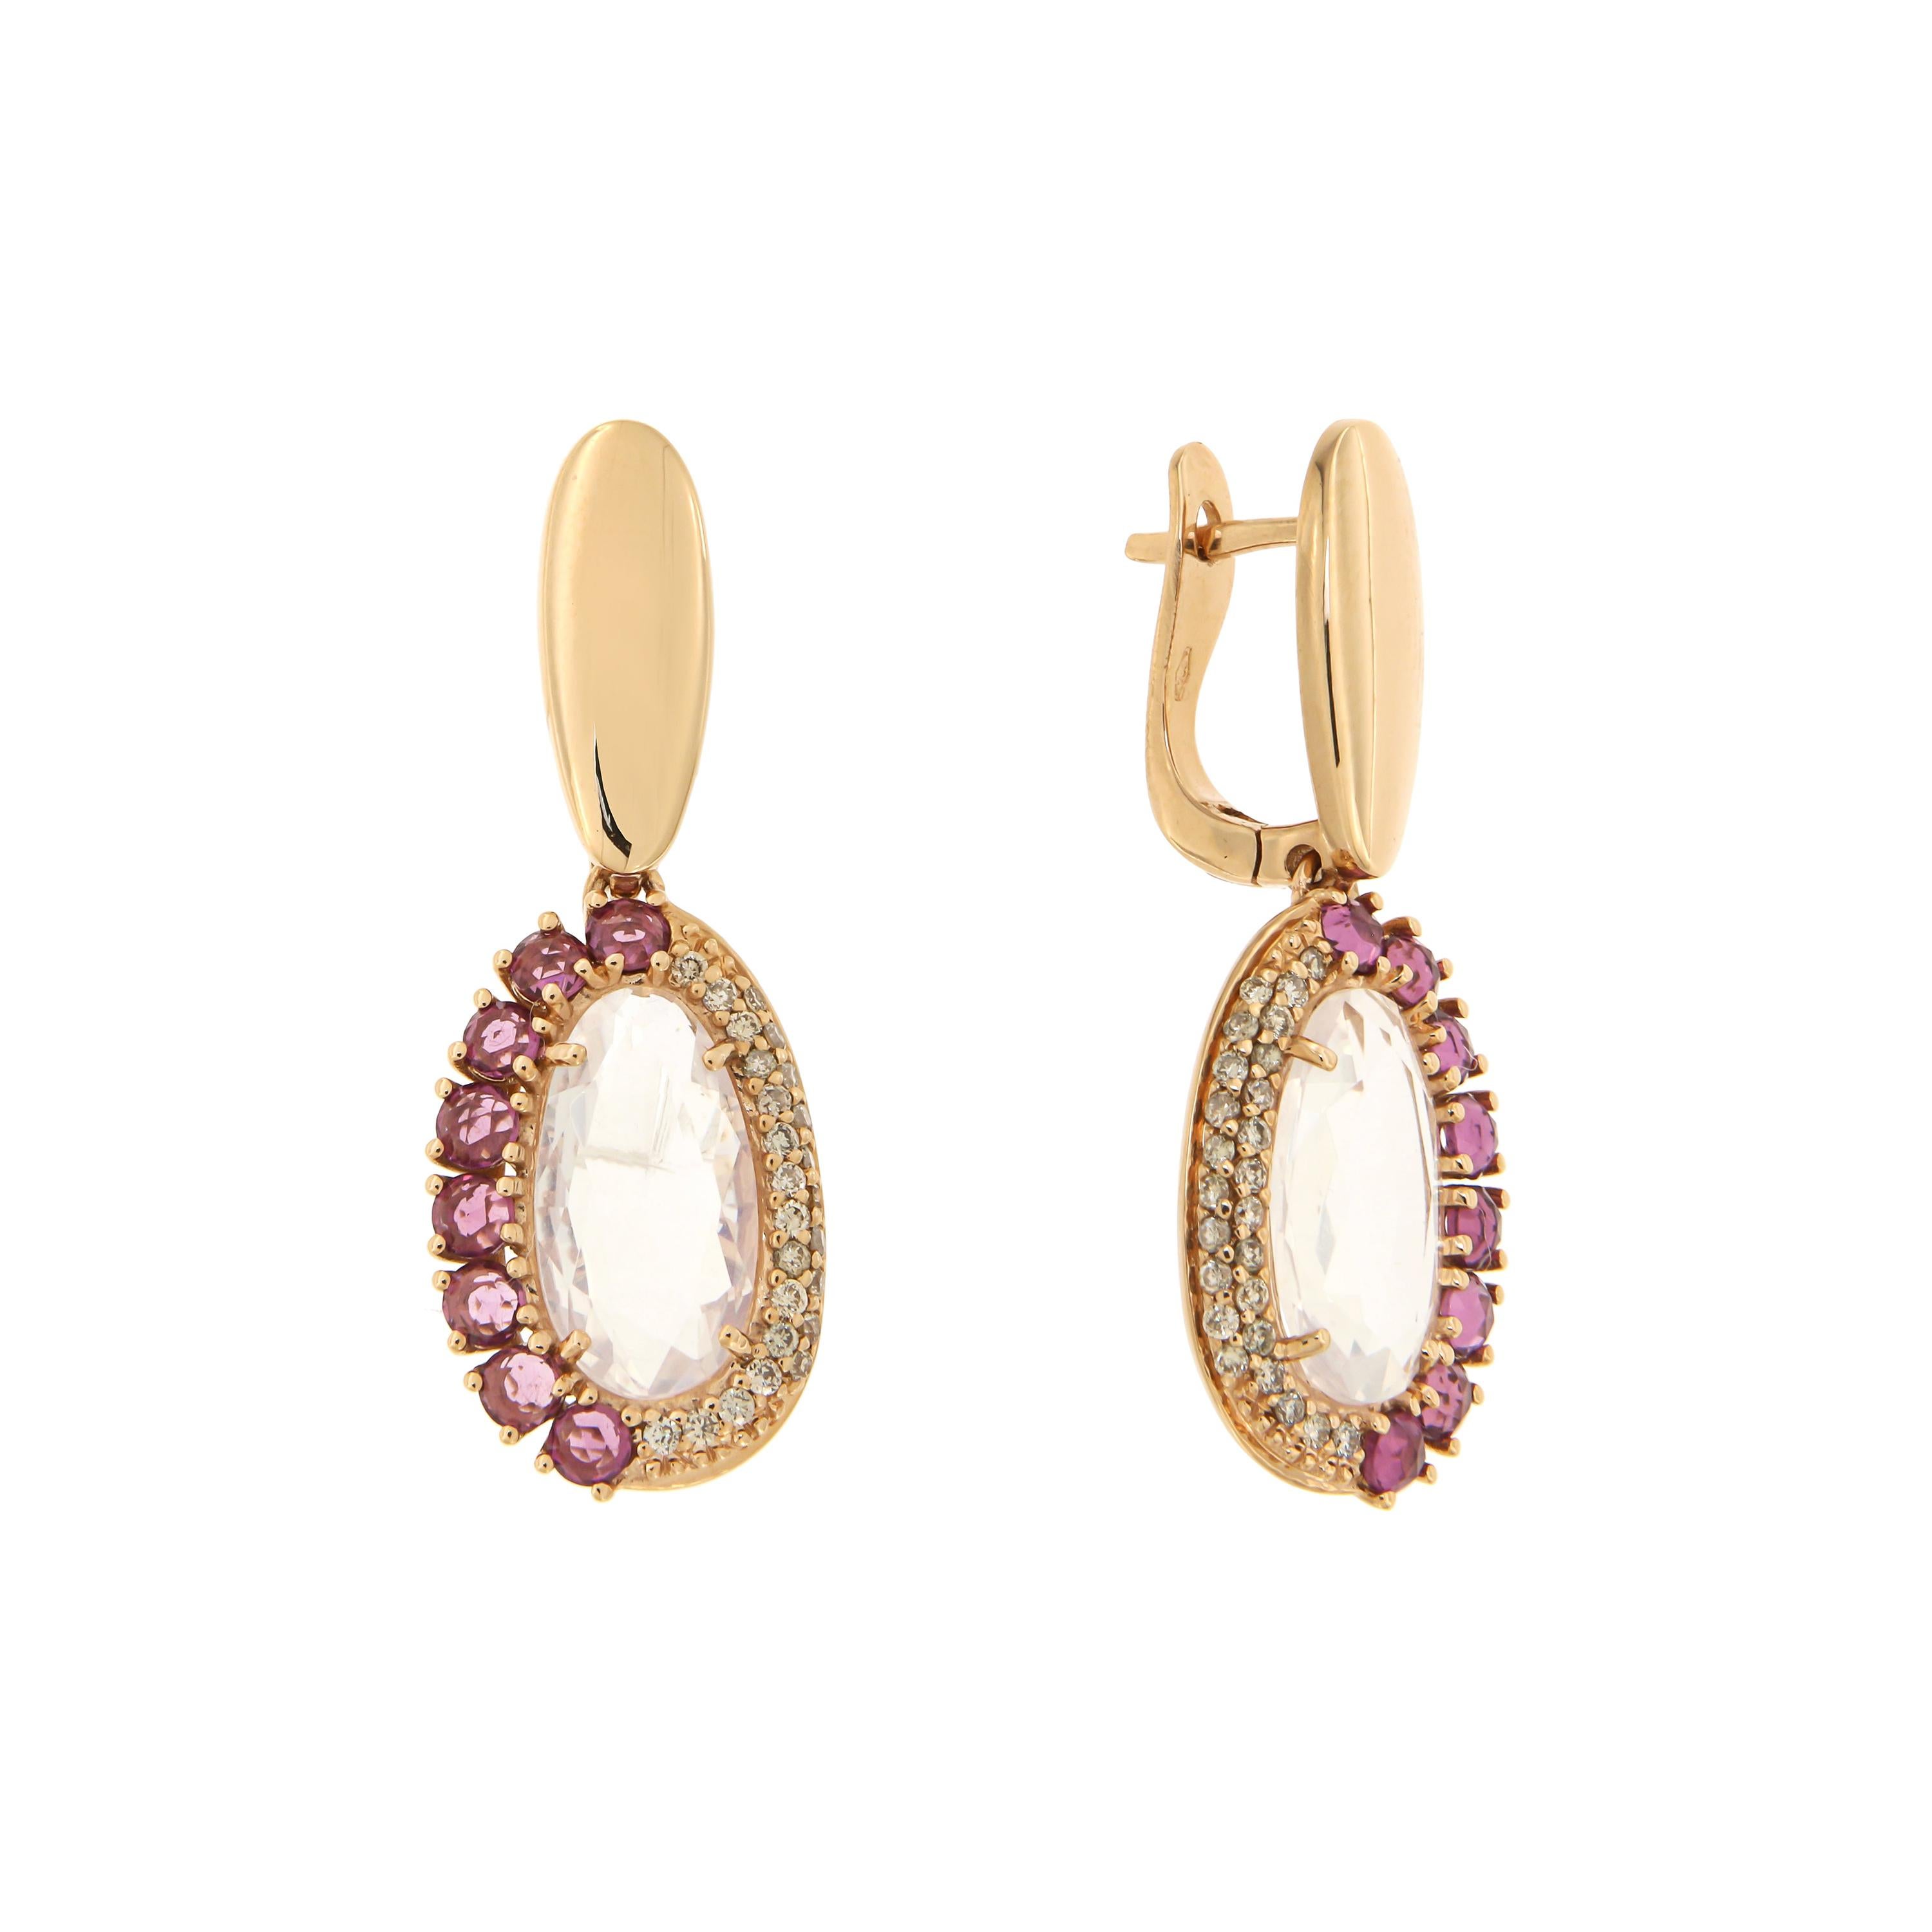 Elegant Quartz Rhodolite Brown Diamonds Rose Gold Earrings for Her Made in Italy